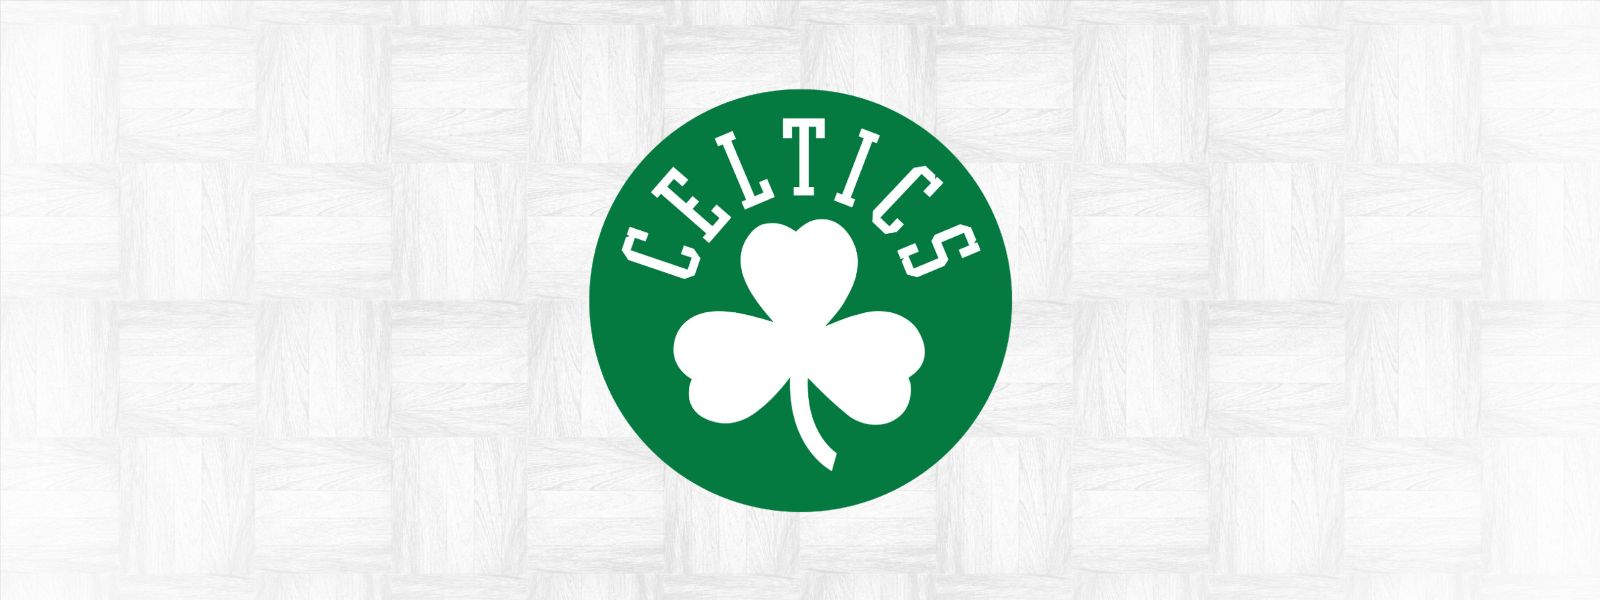 More Info for Celtics vs. Mavericks